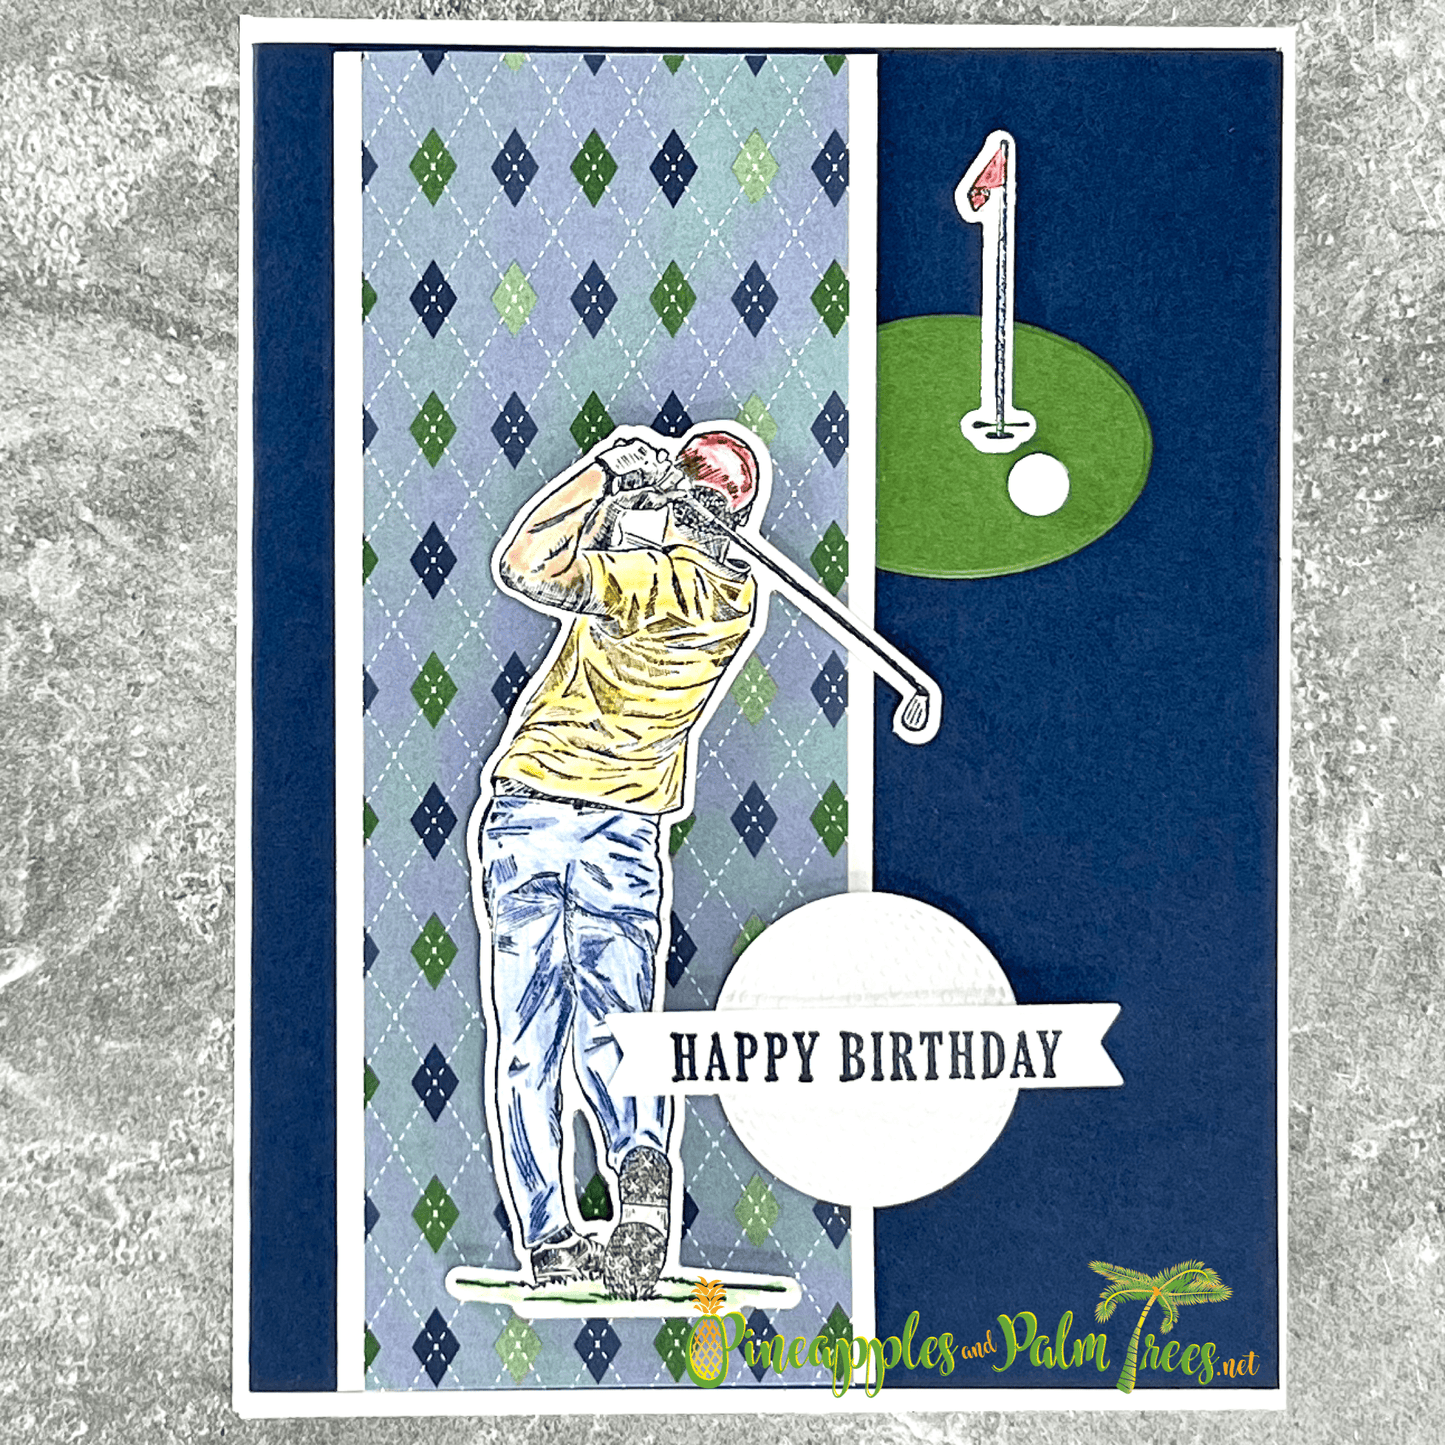 Greeting Card: Happy Birthday - blue golf